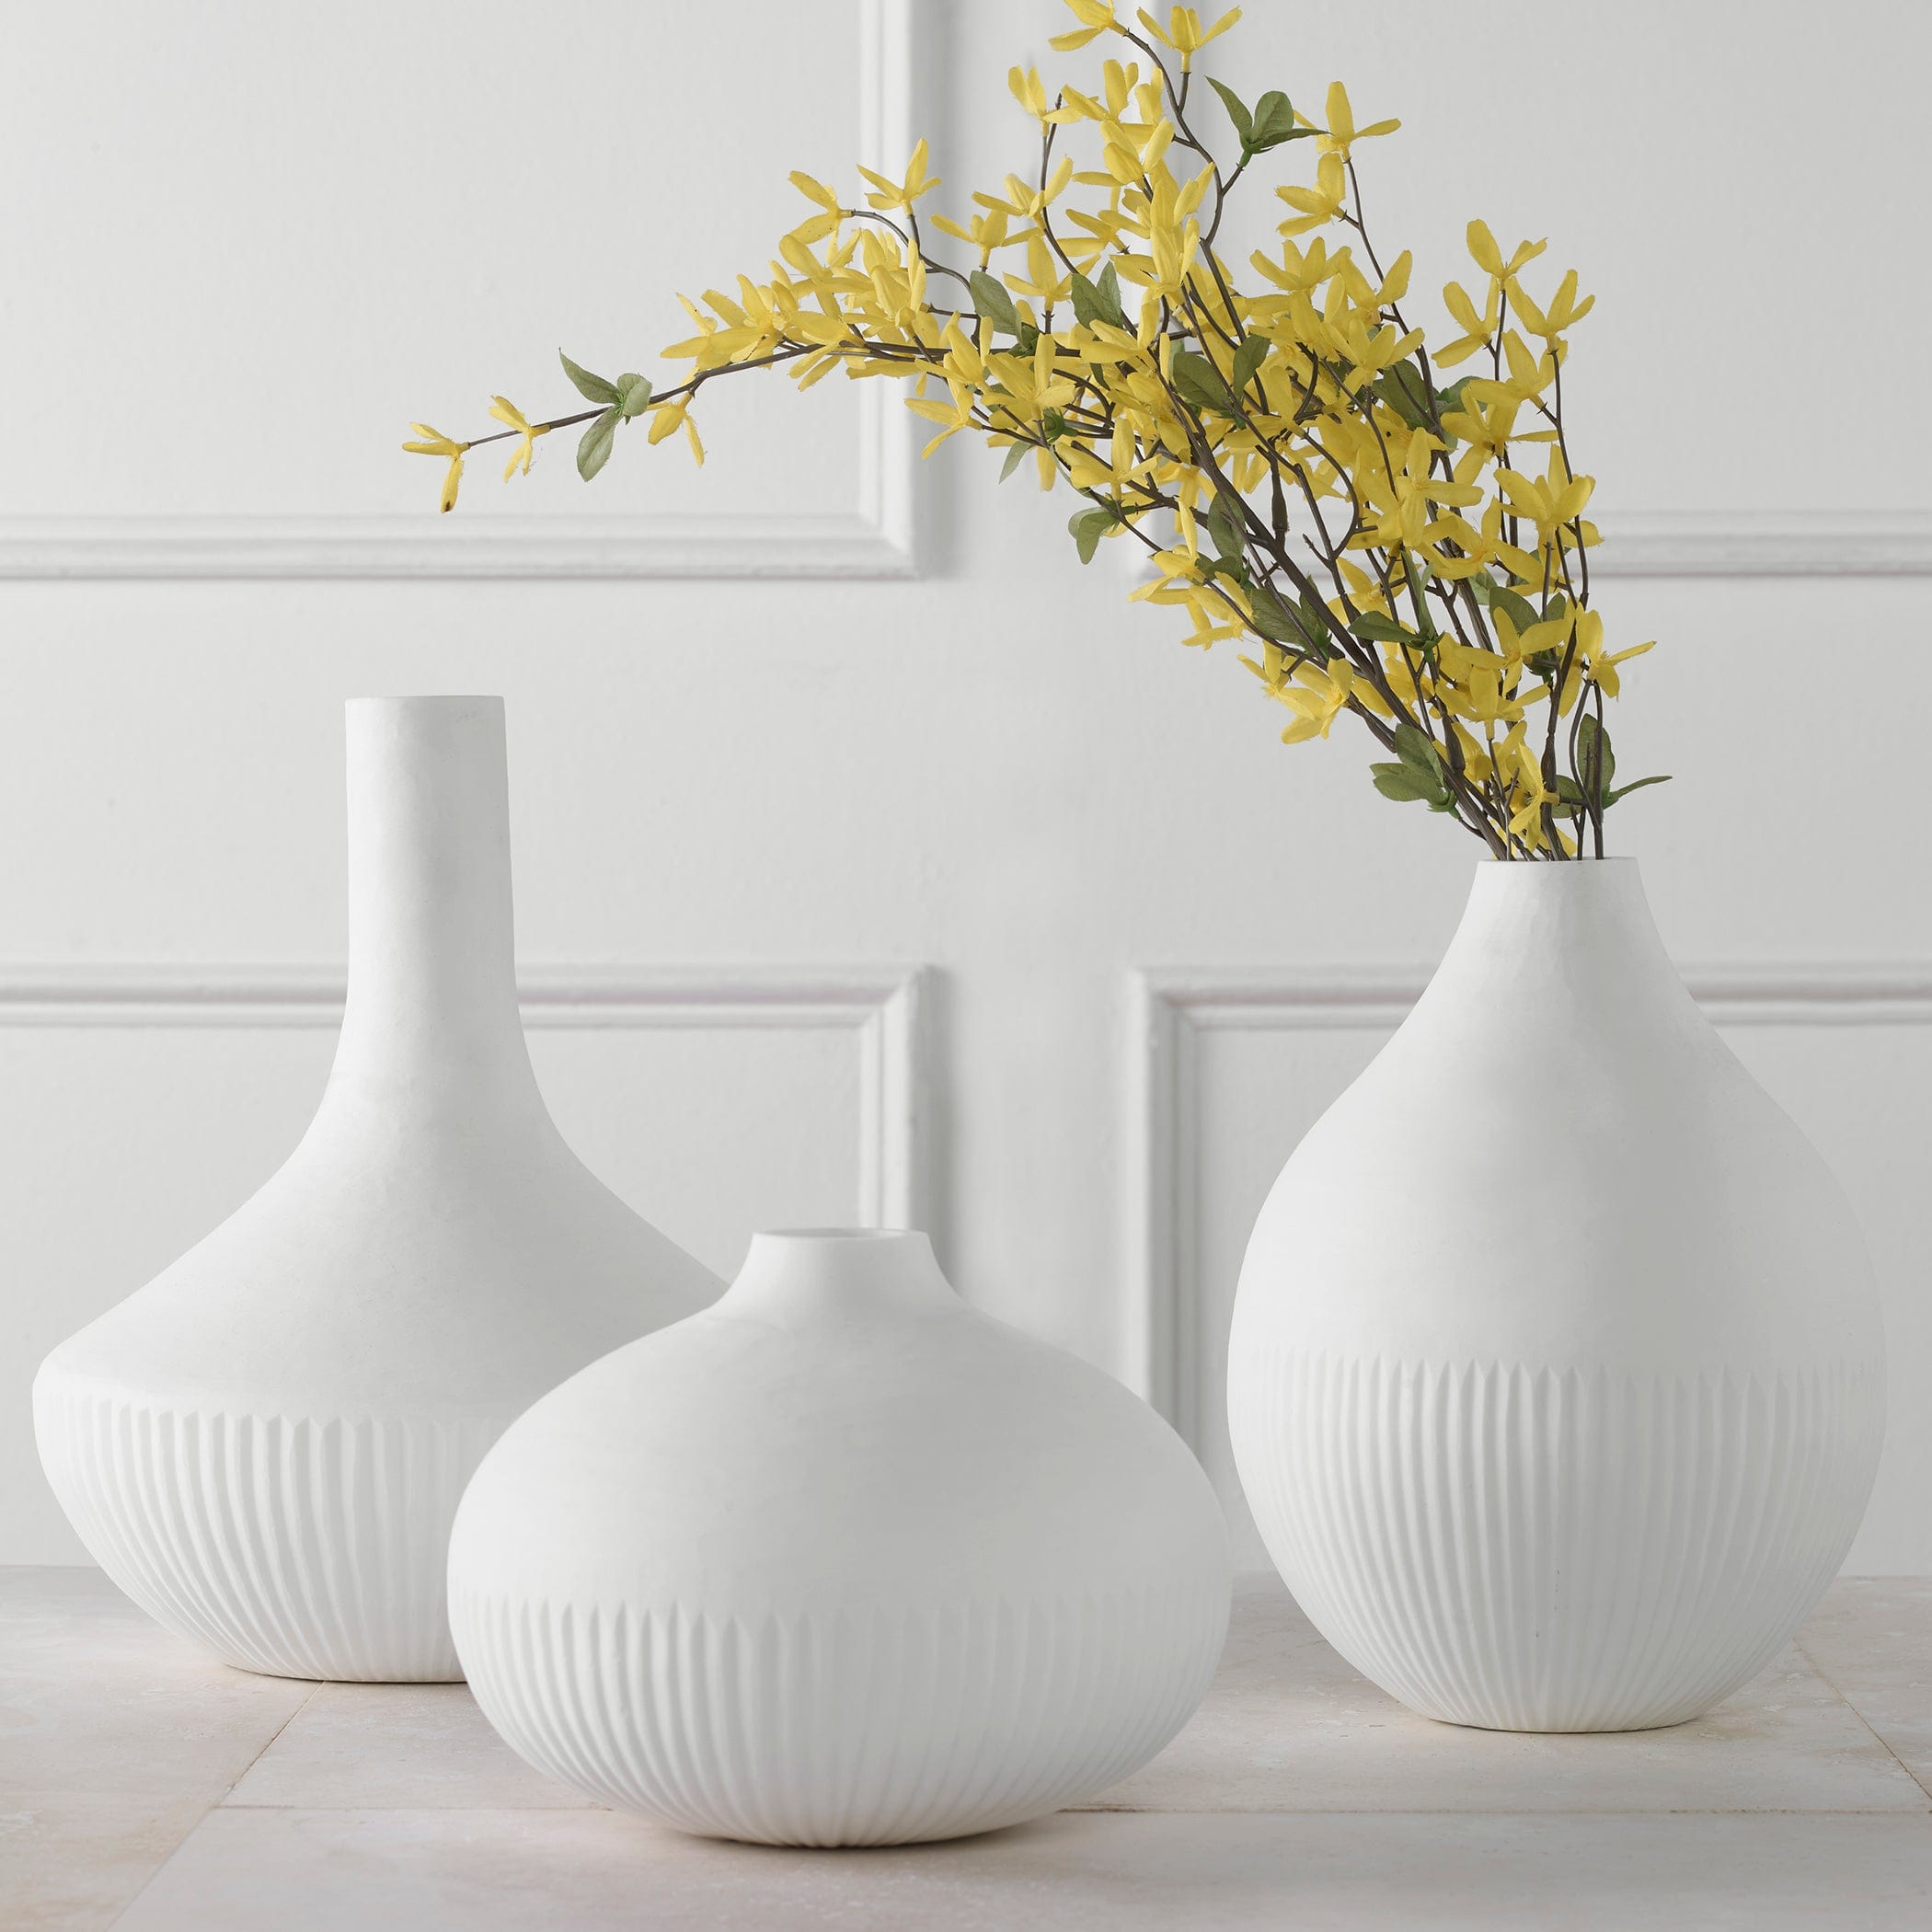 Apothecary Satin White Vases, Set/3 Uttermost